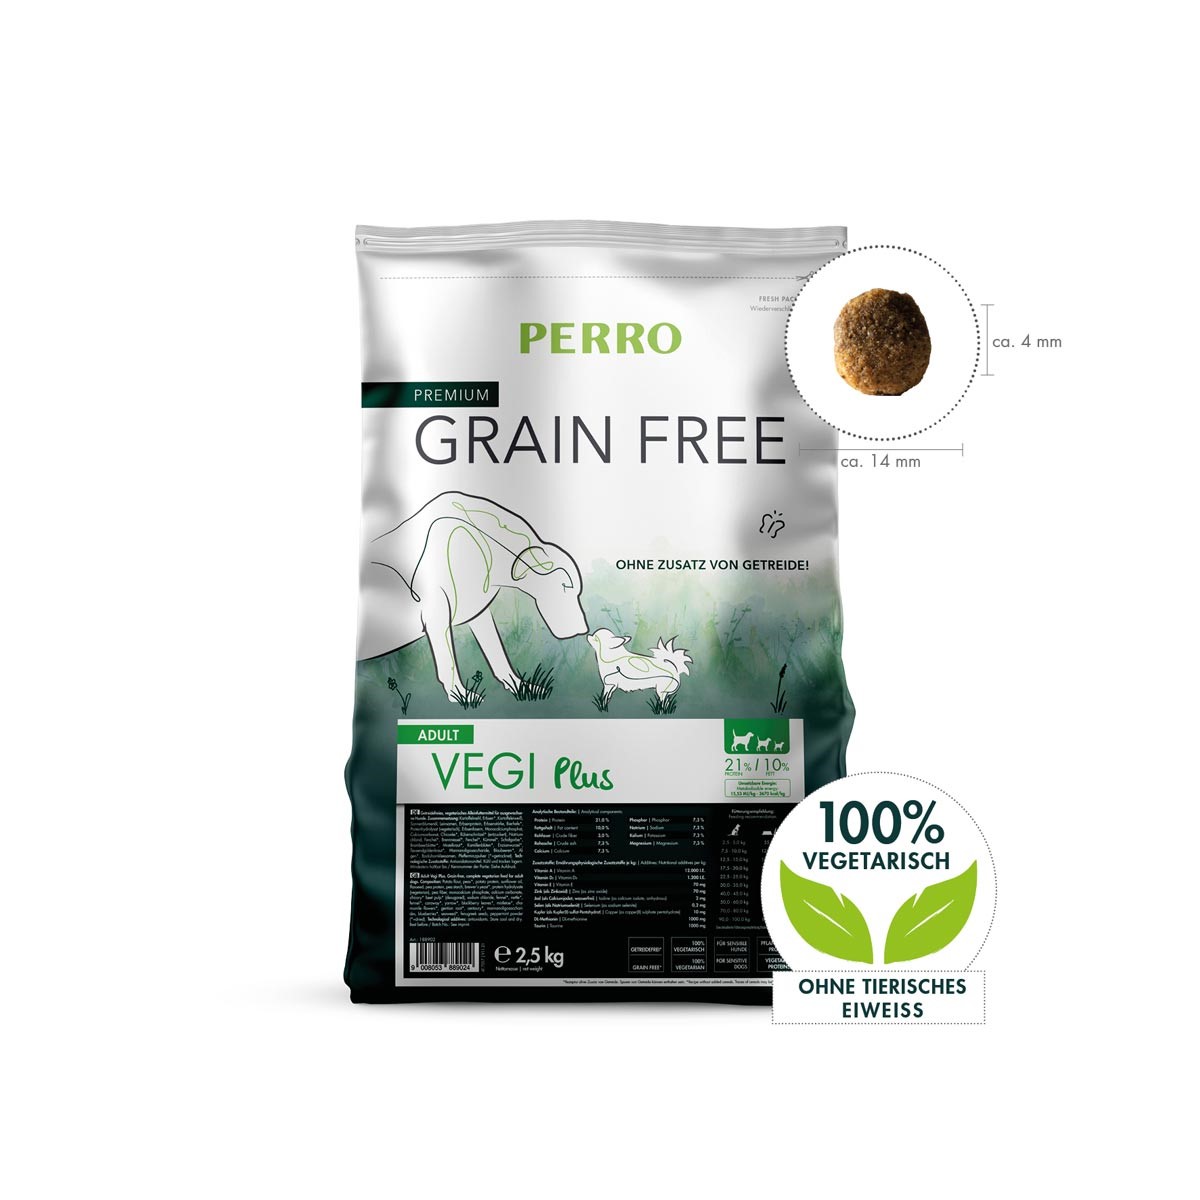 VZOREK PERRO Grain Free Adult Vegi Plus 100g